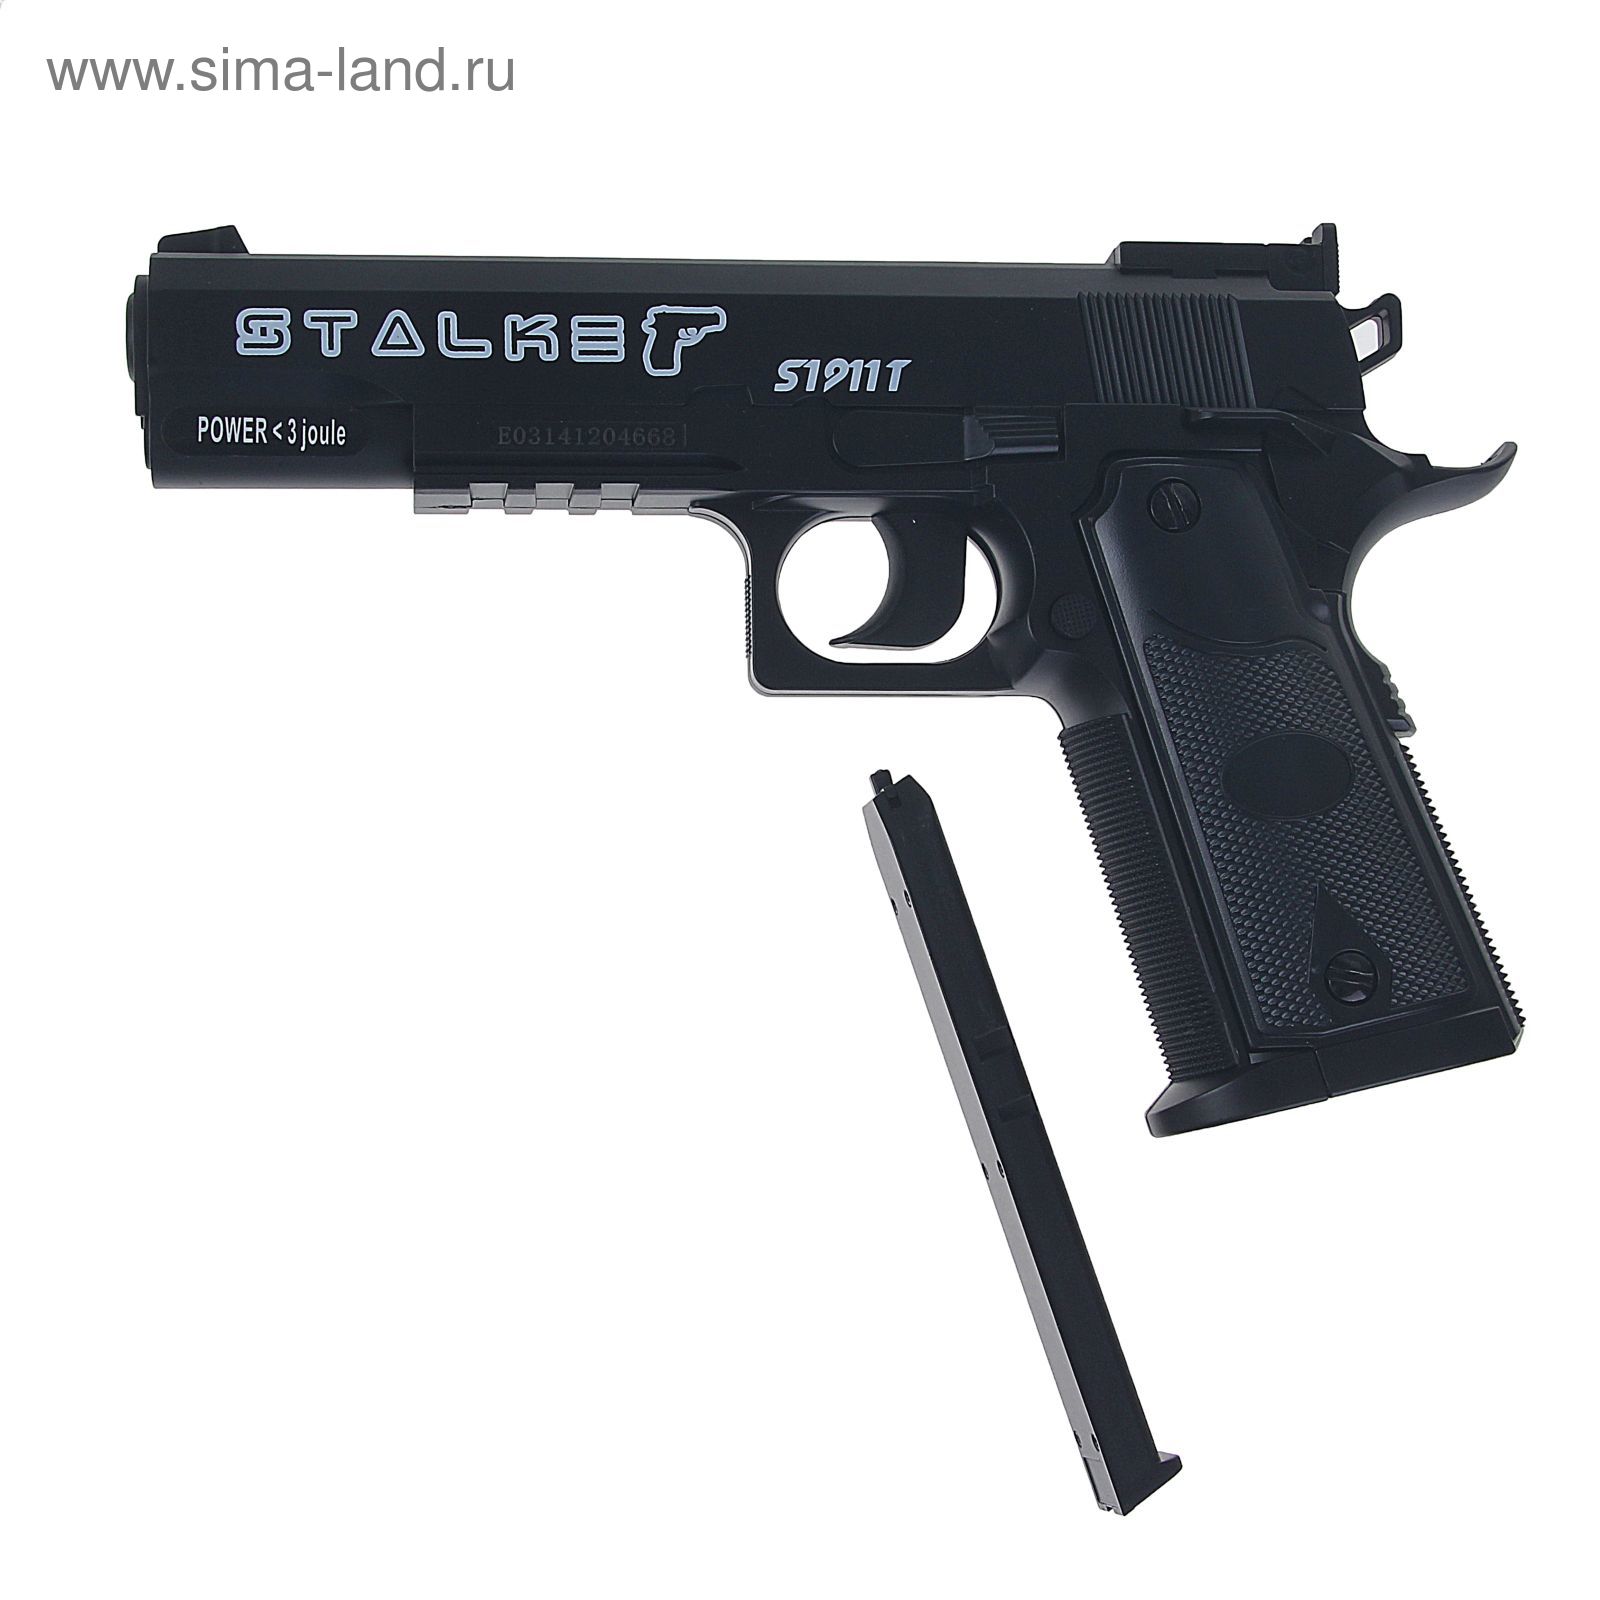 Пистолет пневм. Stalker S1911T, кал.4,5мм, пластик, 120 м/с, черный